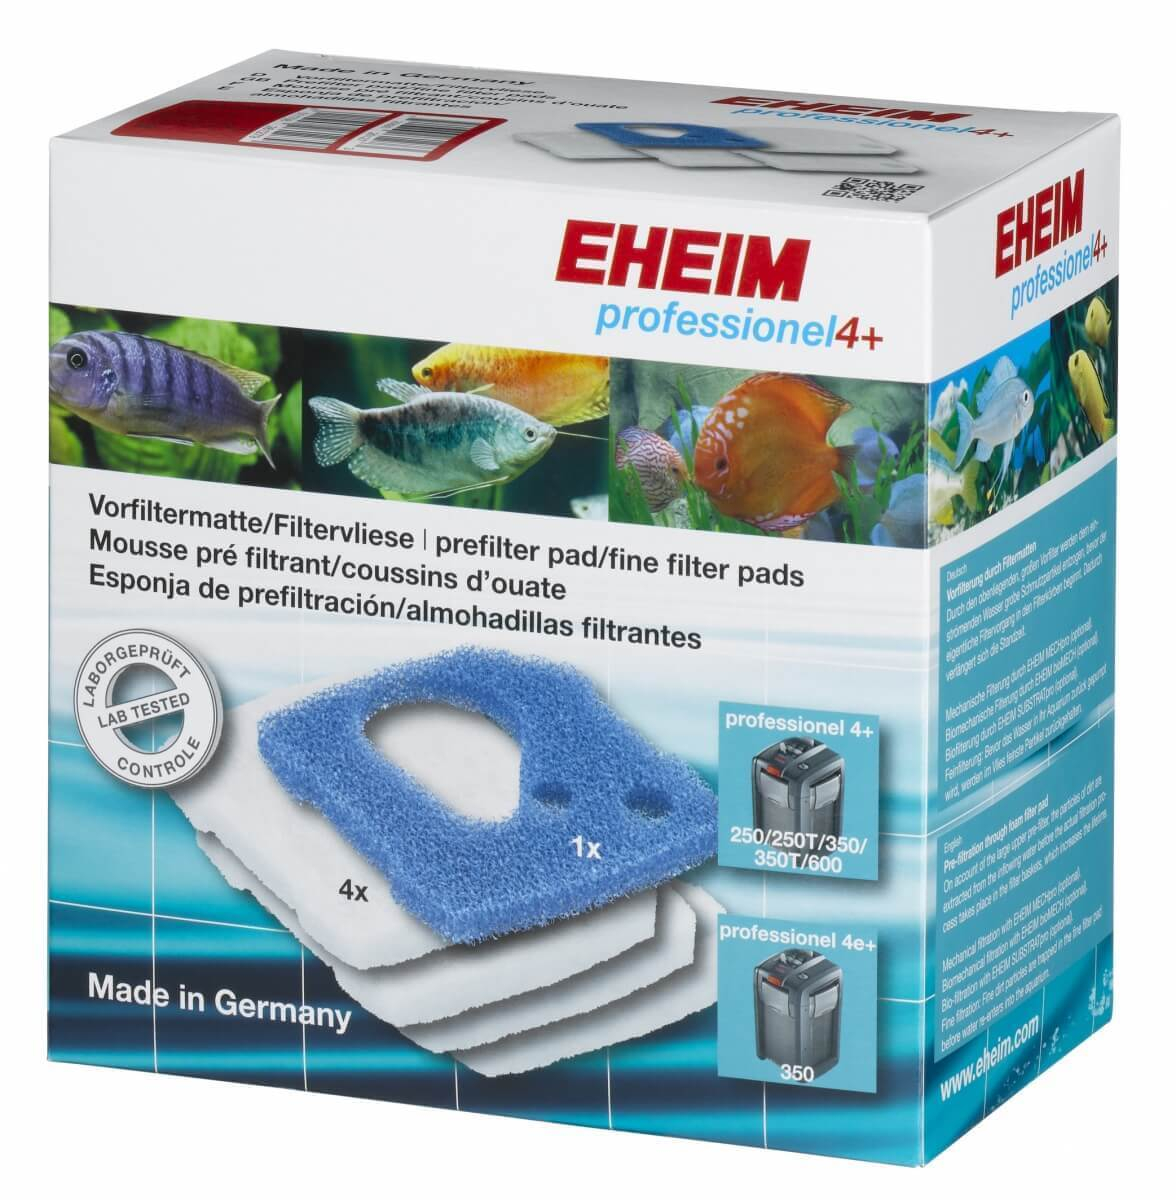 Conjunto espuma filtração para filtro EHEIM Pro 4+ e filtro 4e+